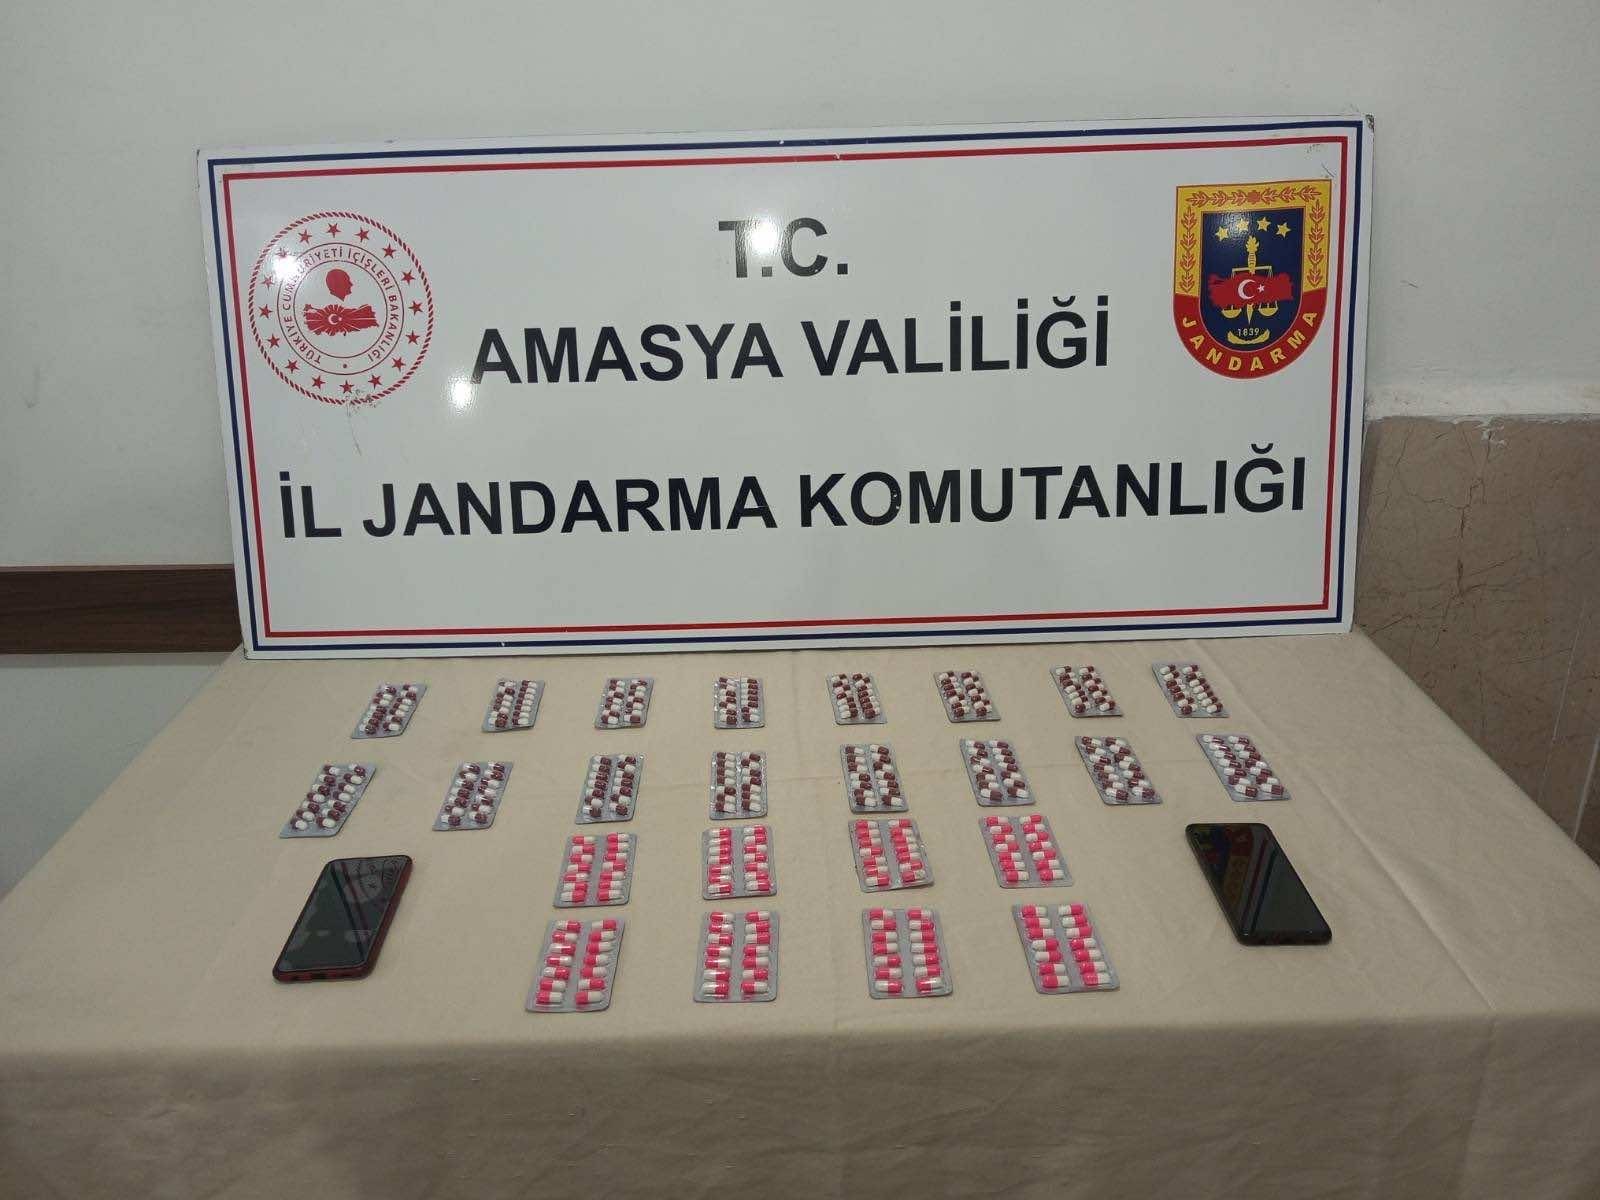 Amasya’da Sentetik Uyuşturucu Operasyonu: 336 Hap Ele Geçirildi, 2 Gözaltı!